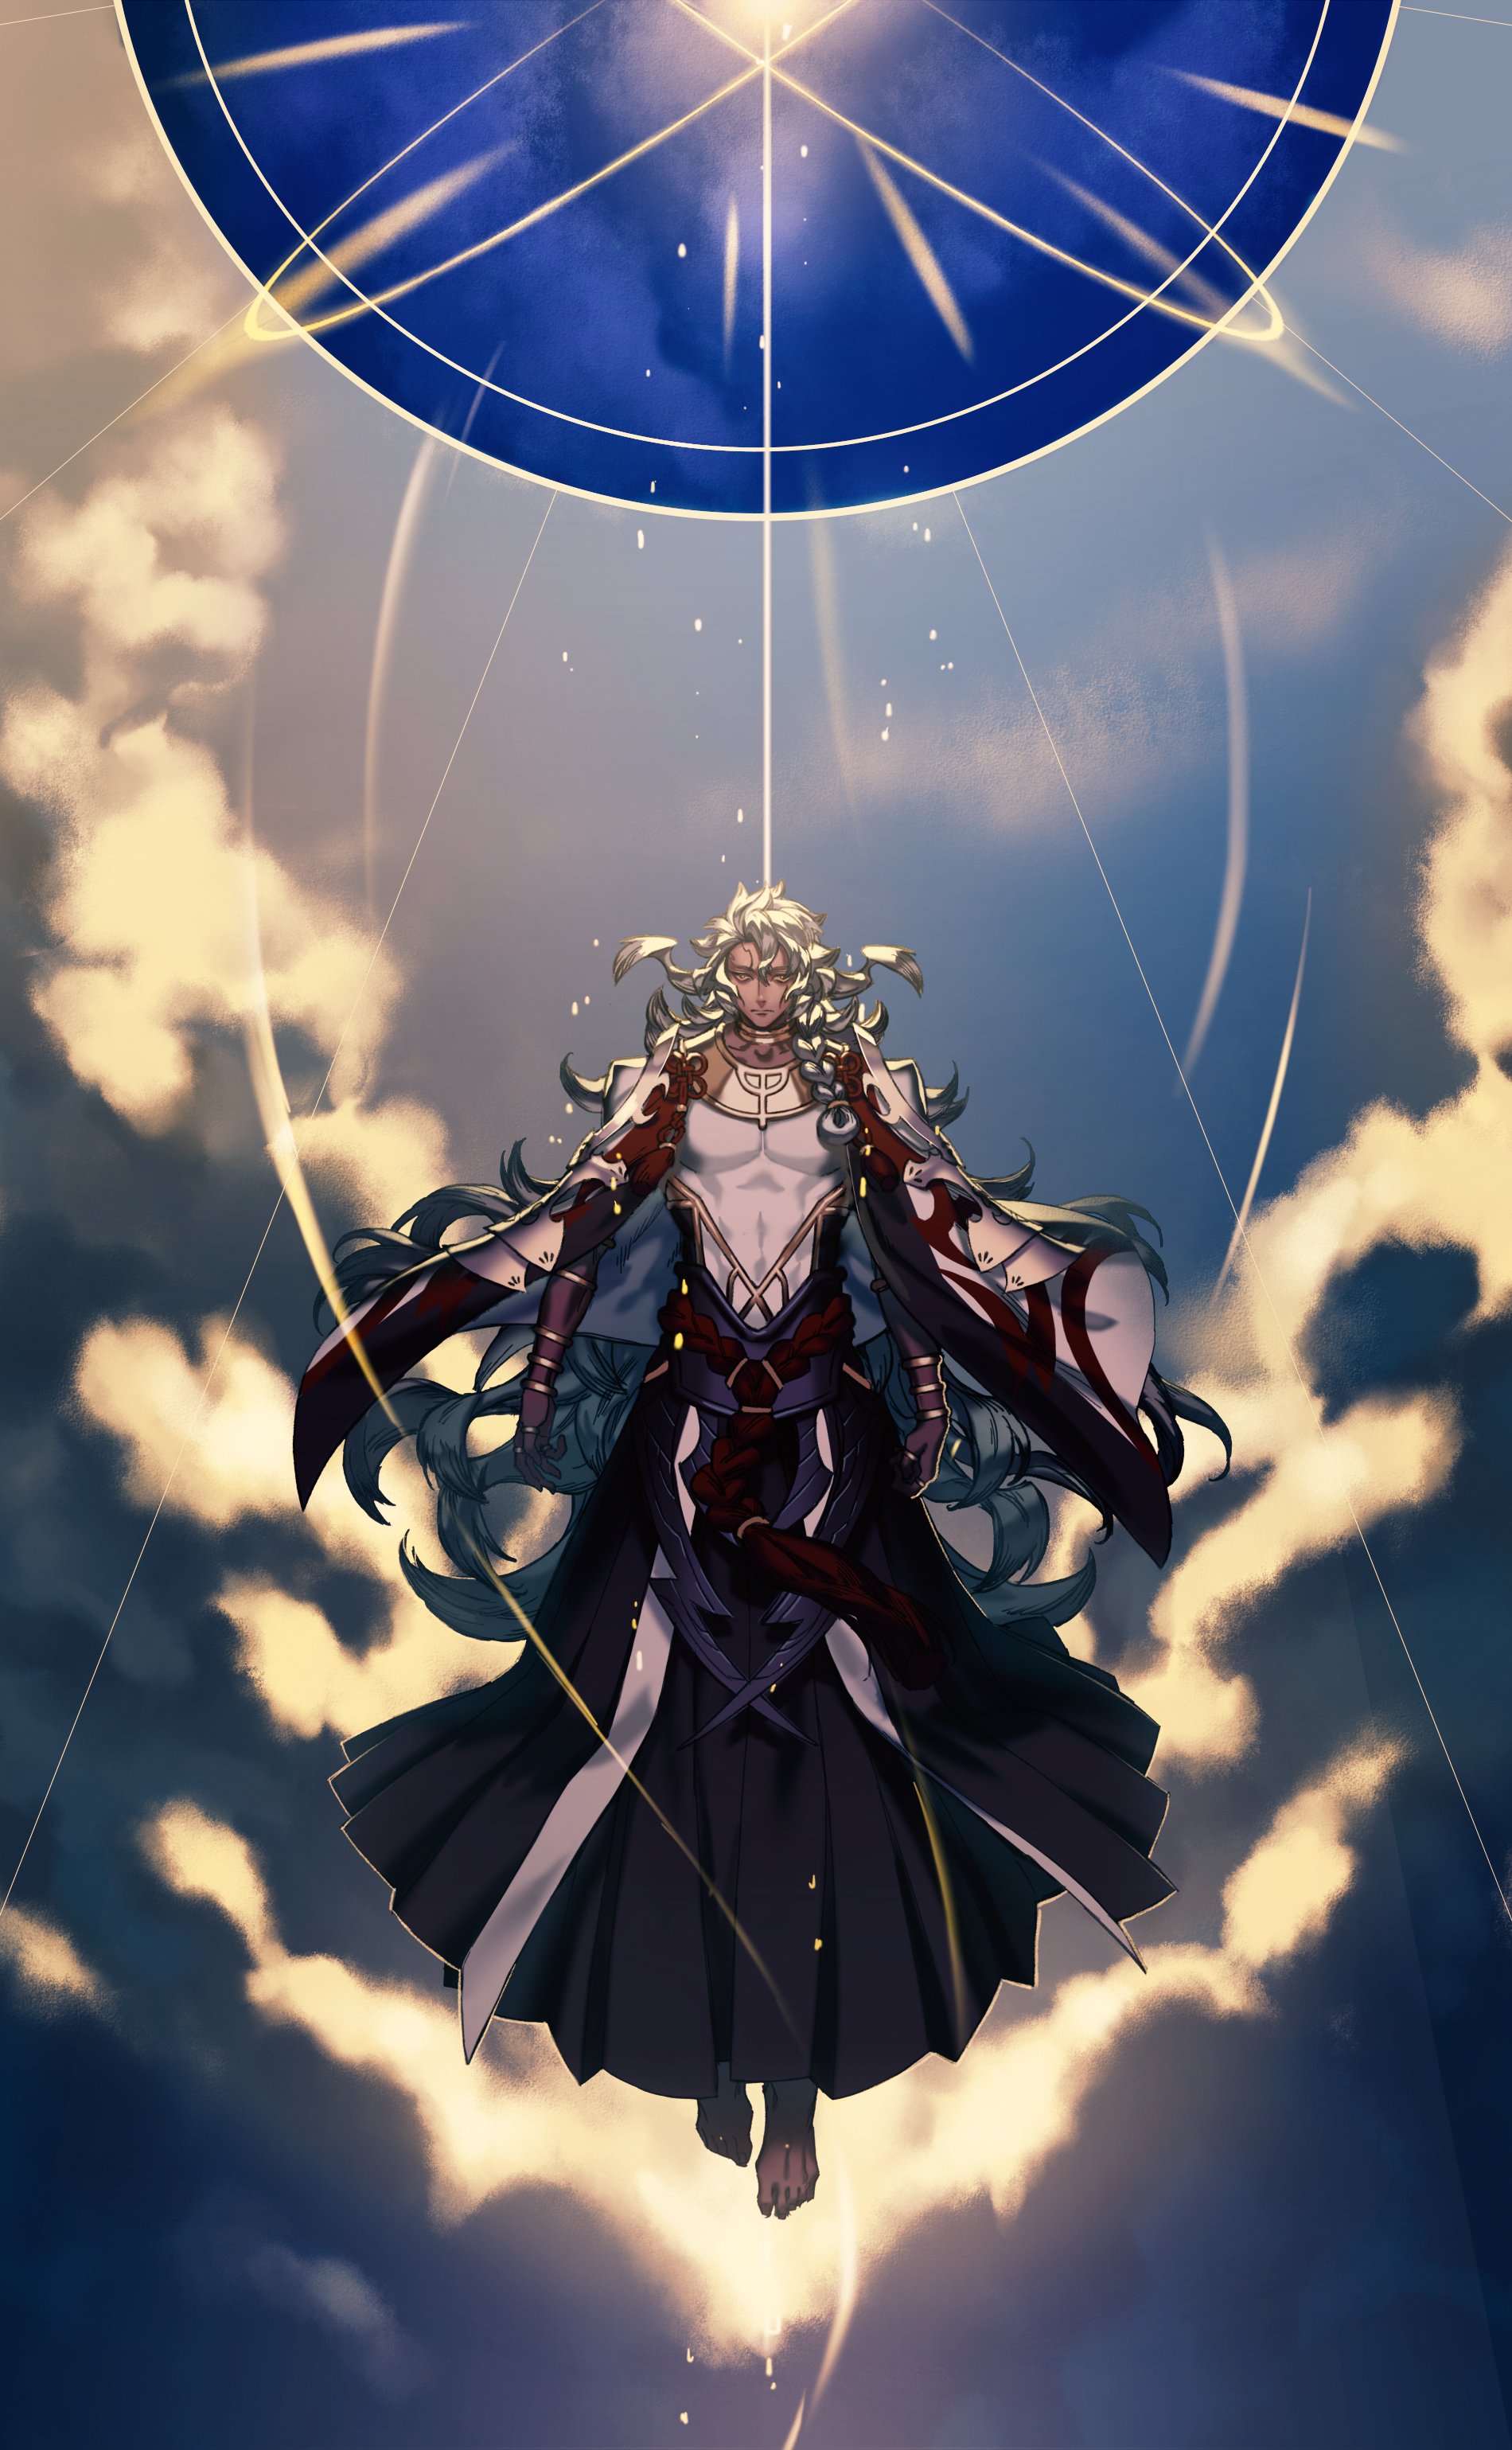 Caster (Solomon) (Goetia) Grand Order Anime Image Board